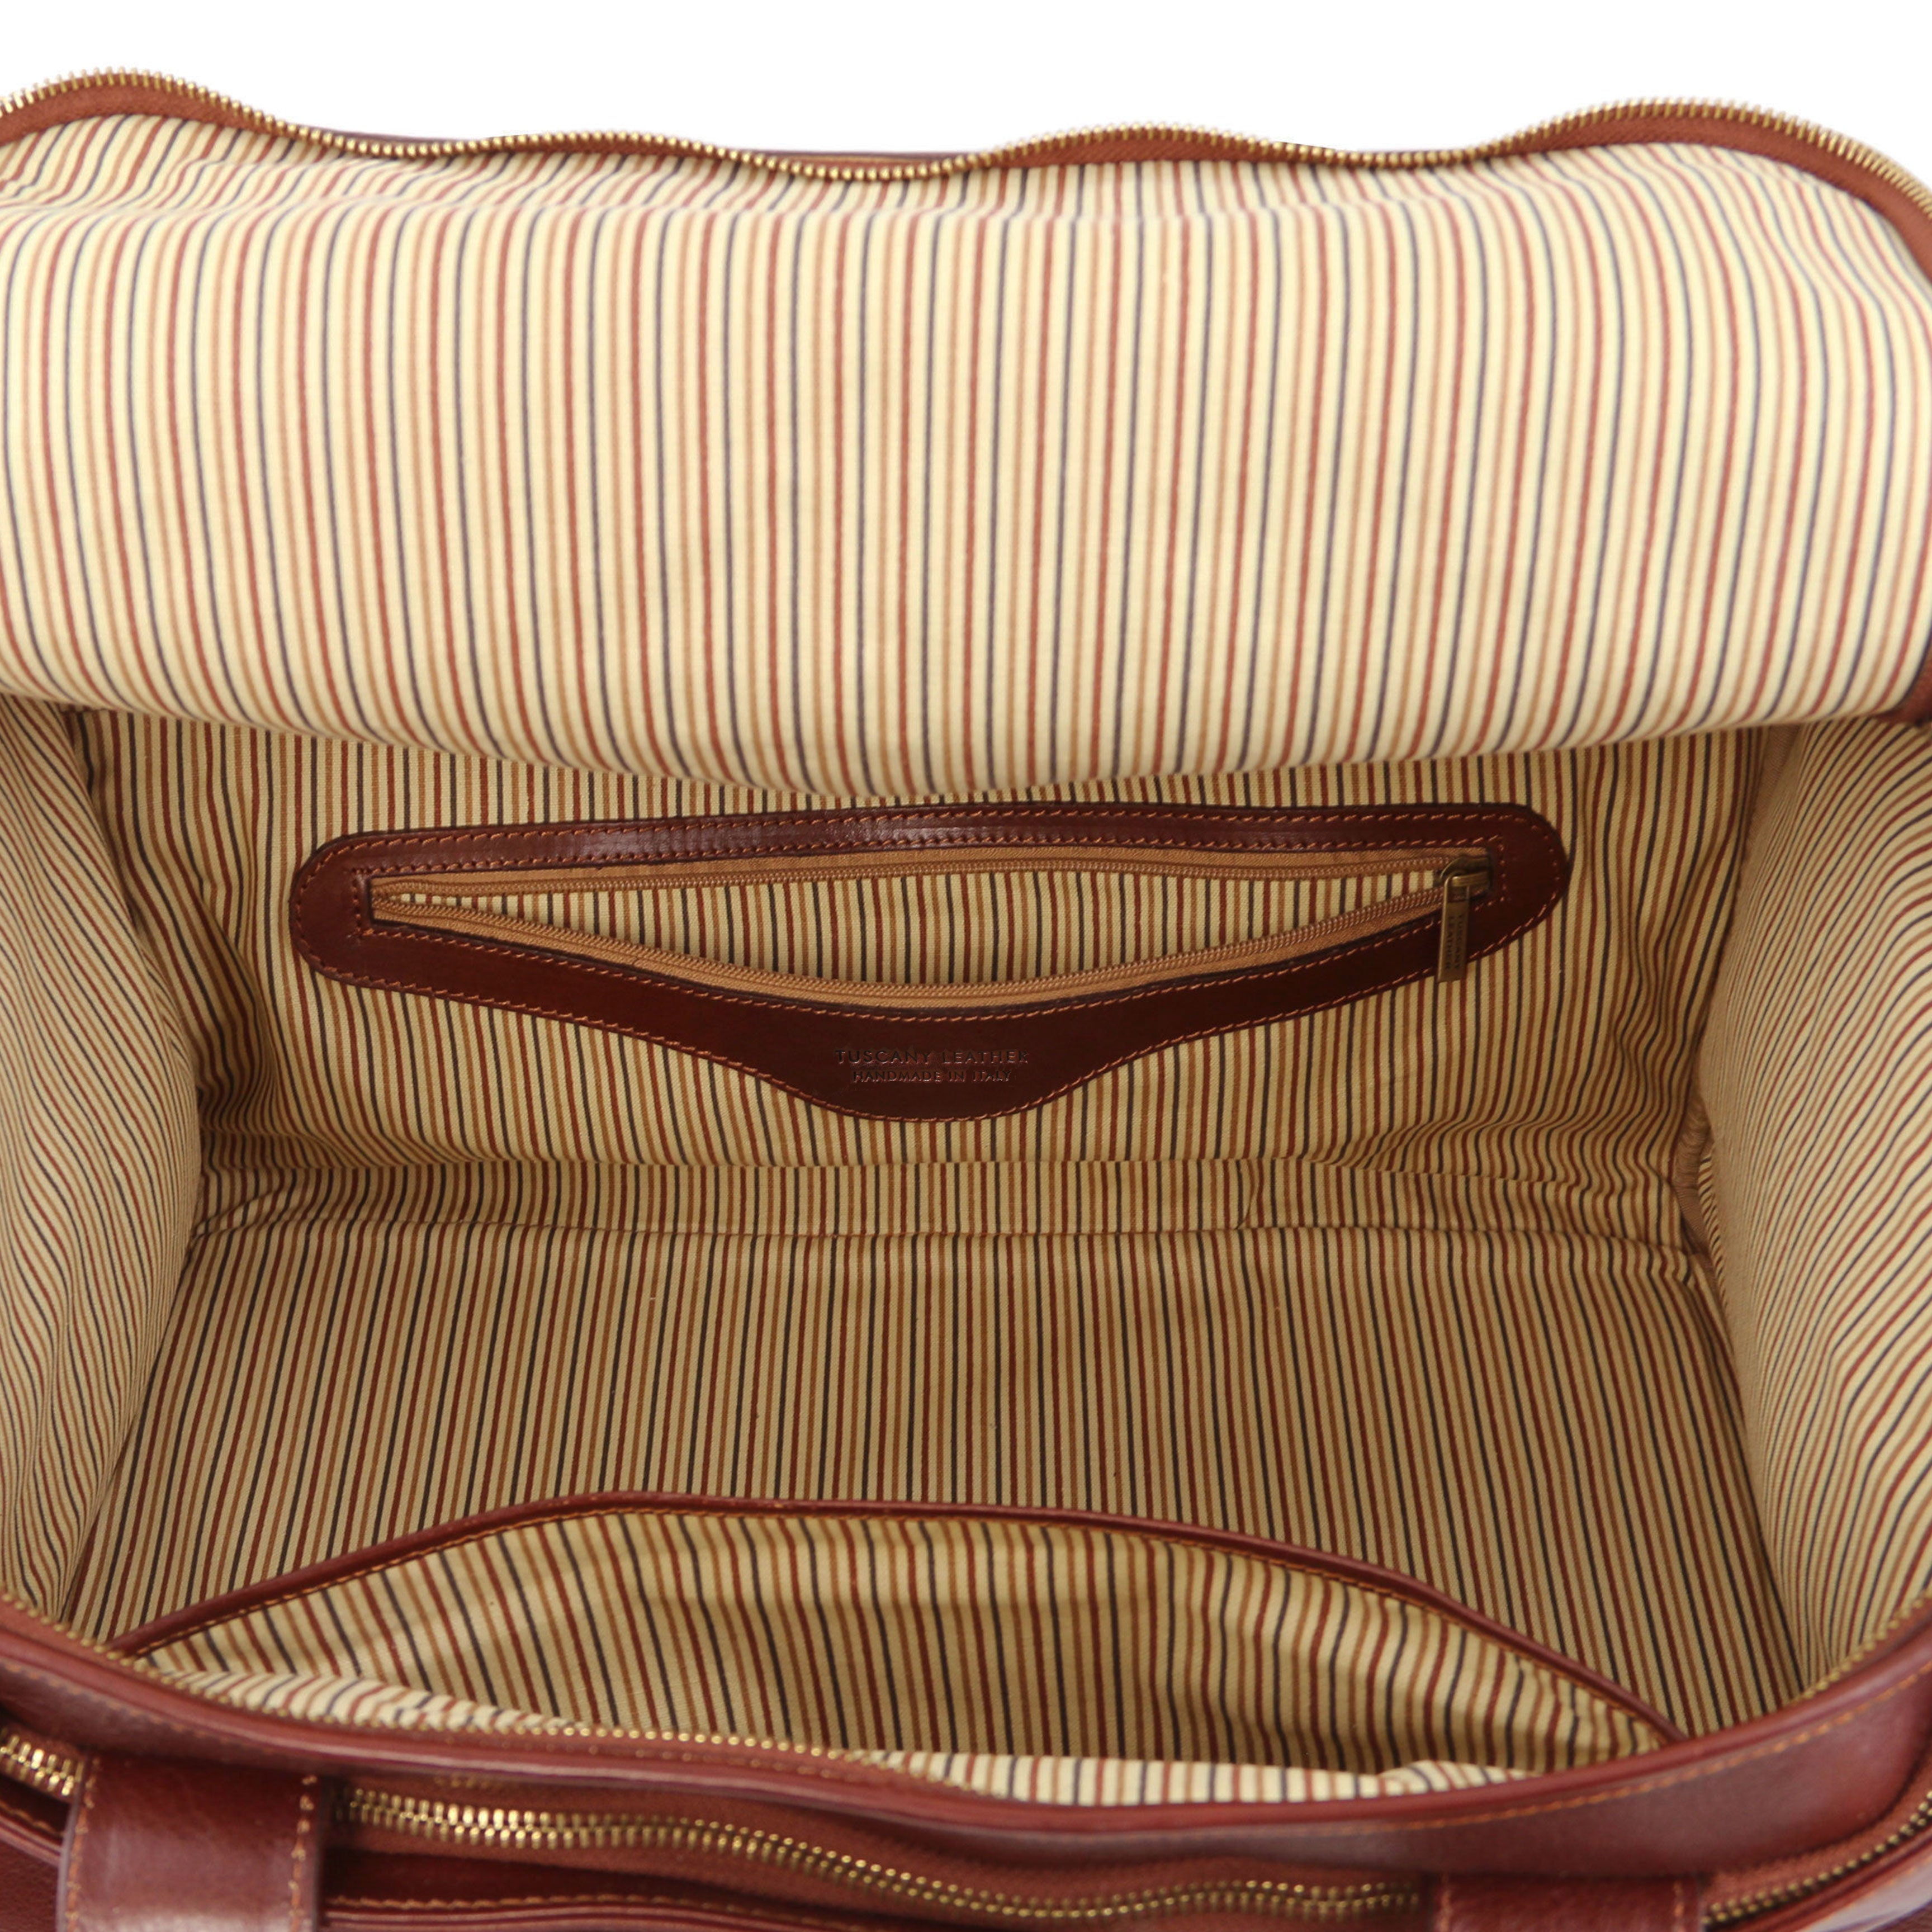 Tuscany Leather reistas TL Voyager groot formaat bruin binnenvakken